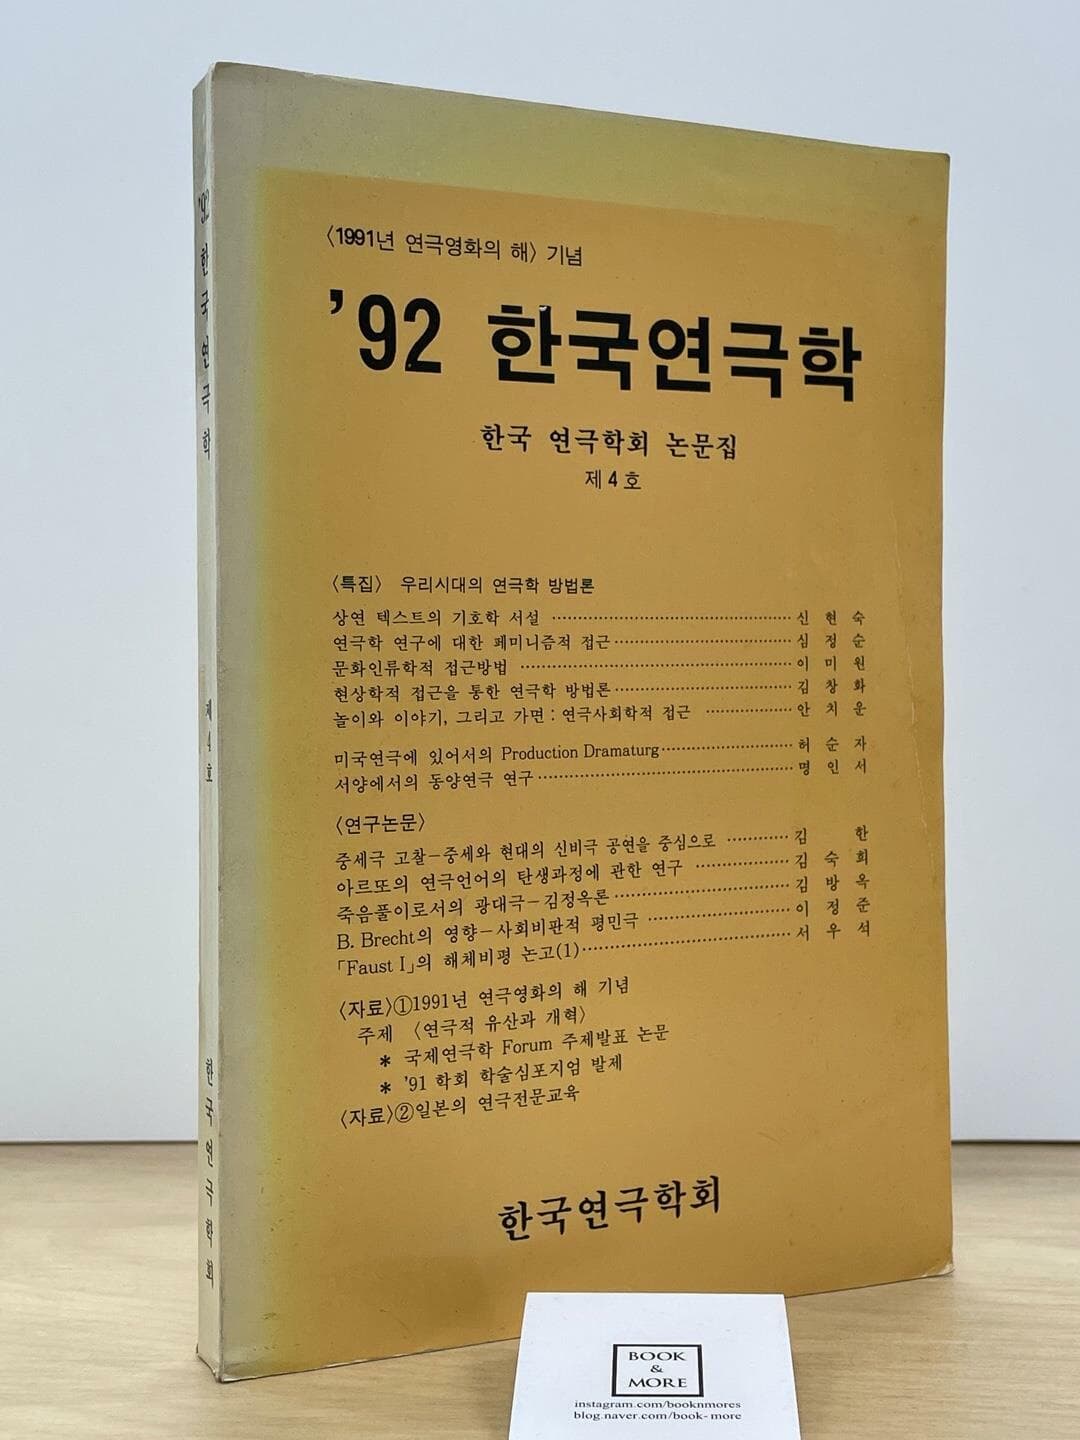 92 한국연극학 / 한국 연극학회 논문집 제4호 / 상태 : 중